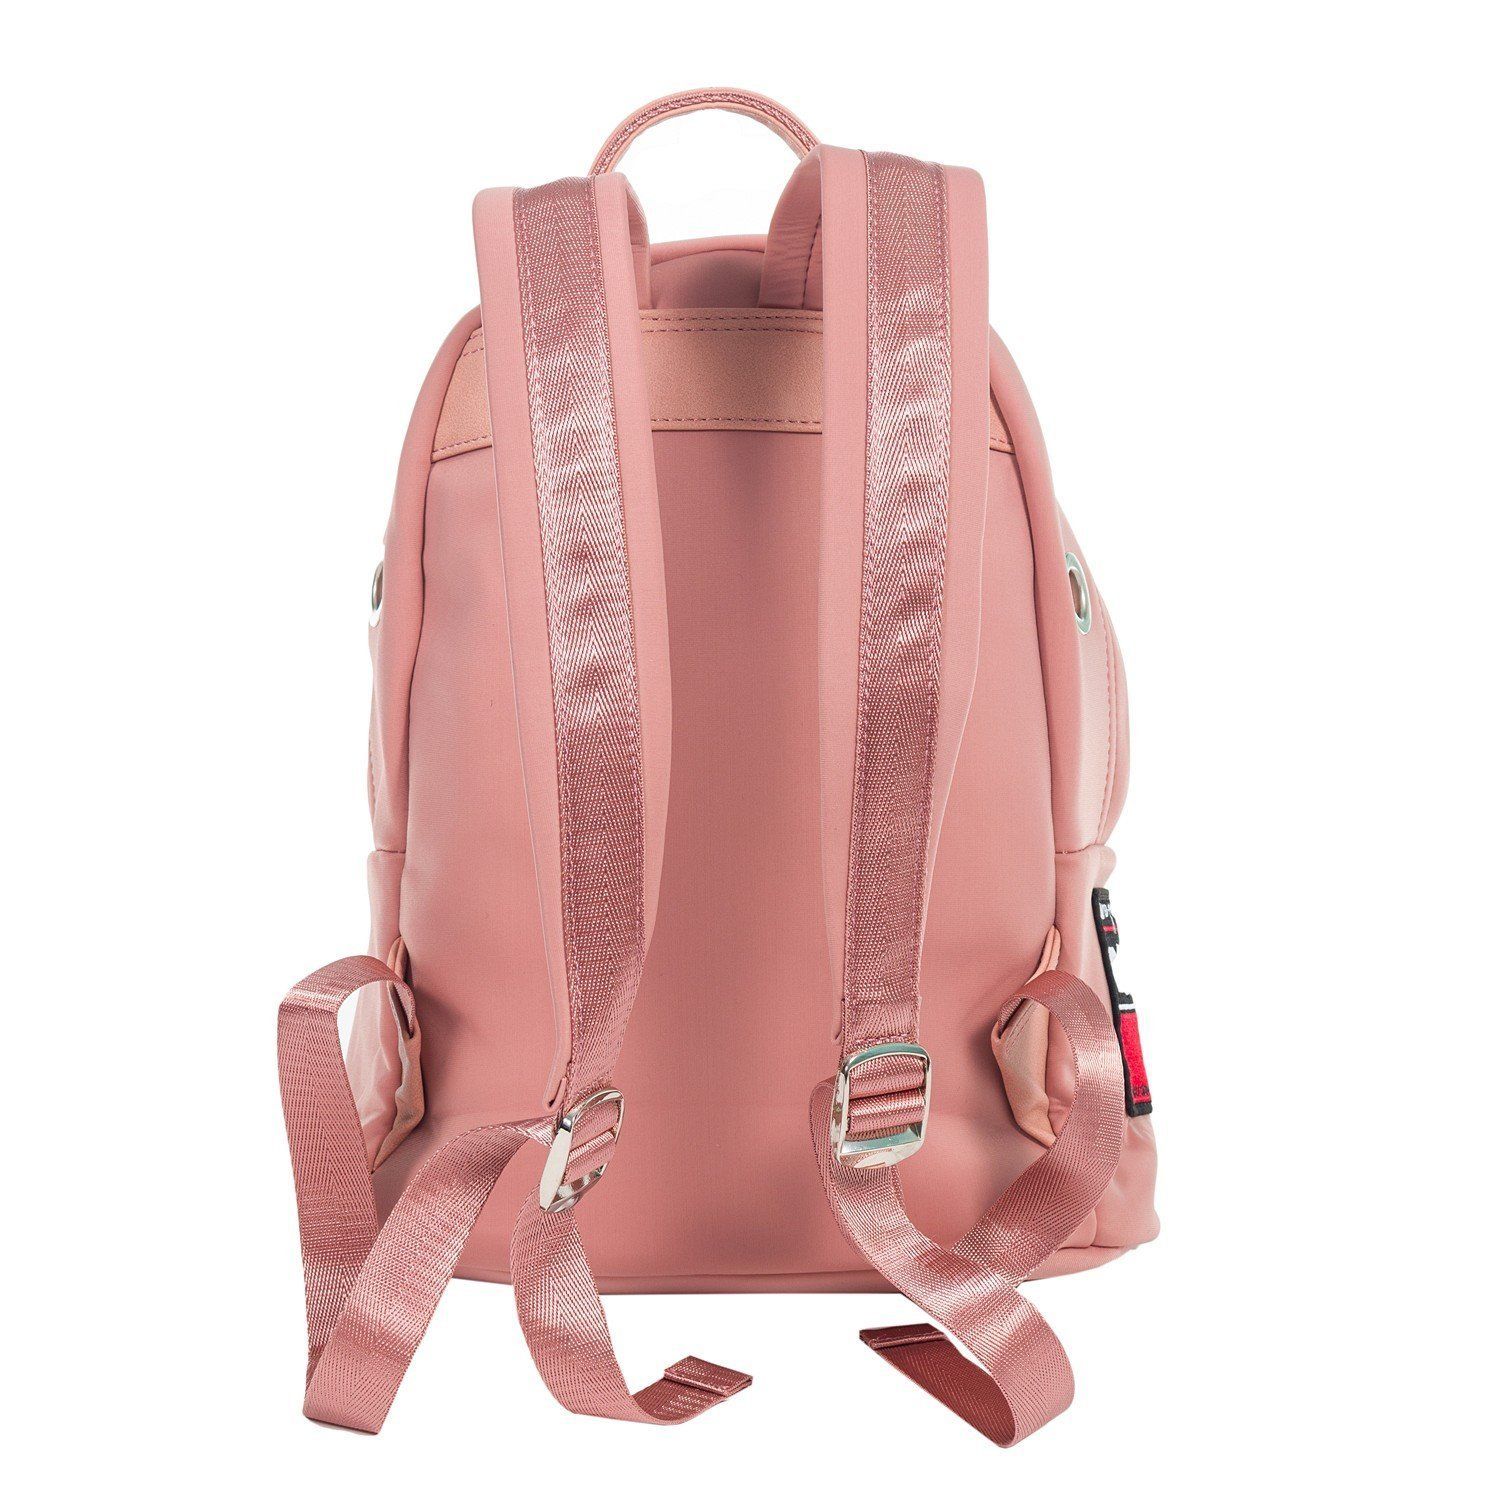 Рюкзак женский городской, розовый, с широкими лямками, объем 16 л